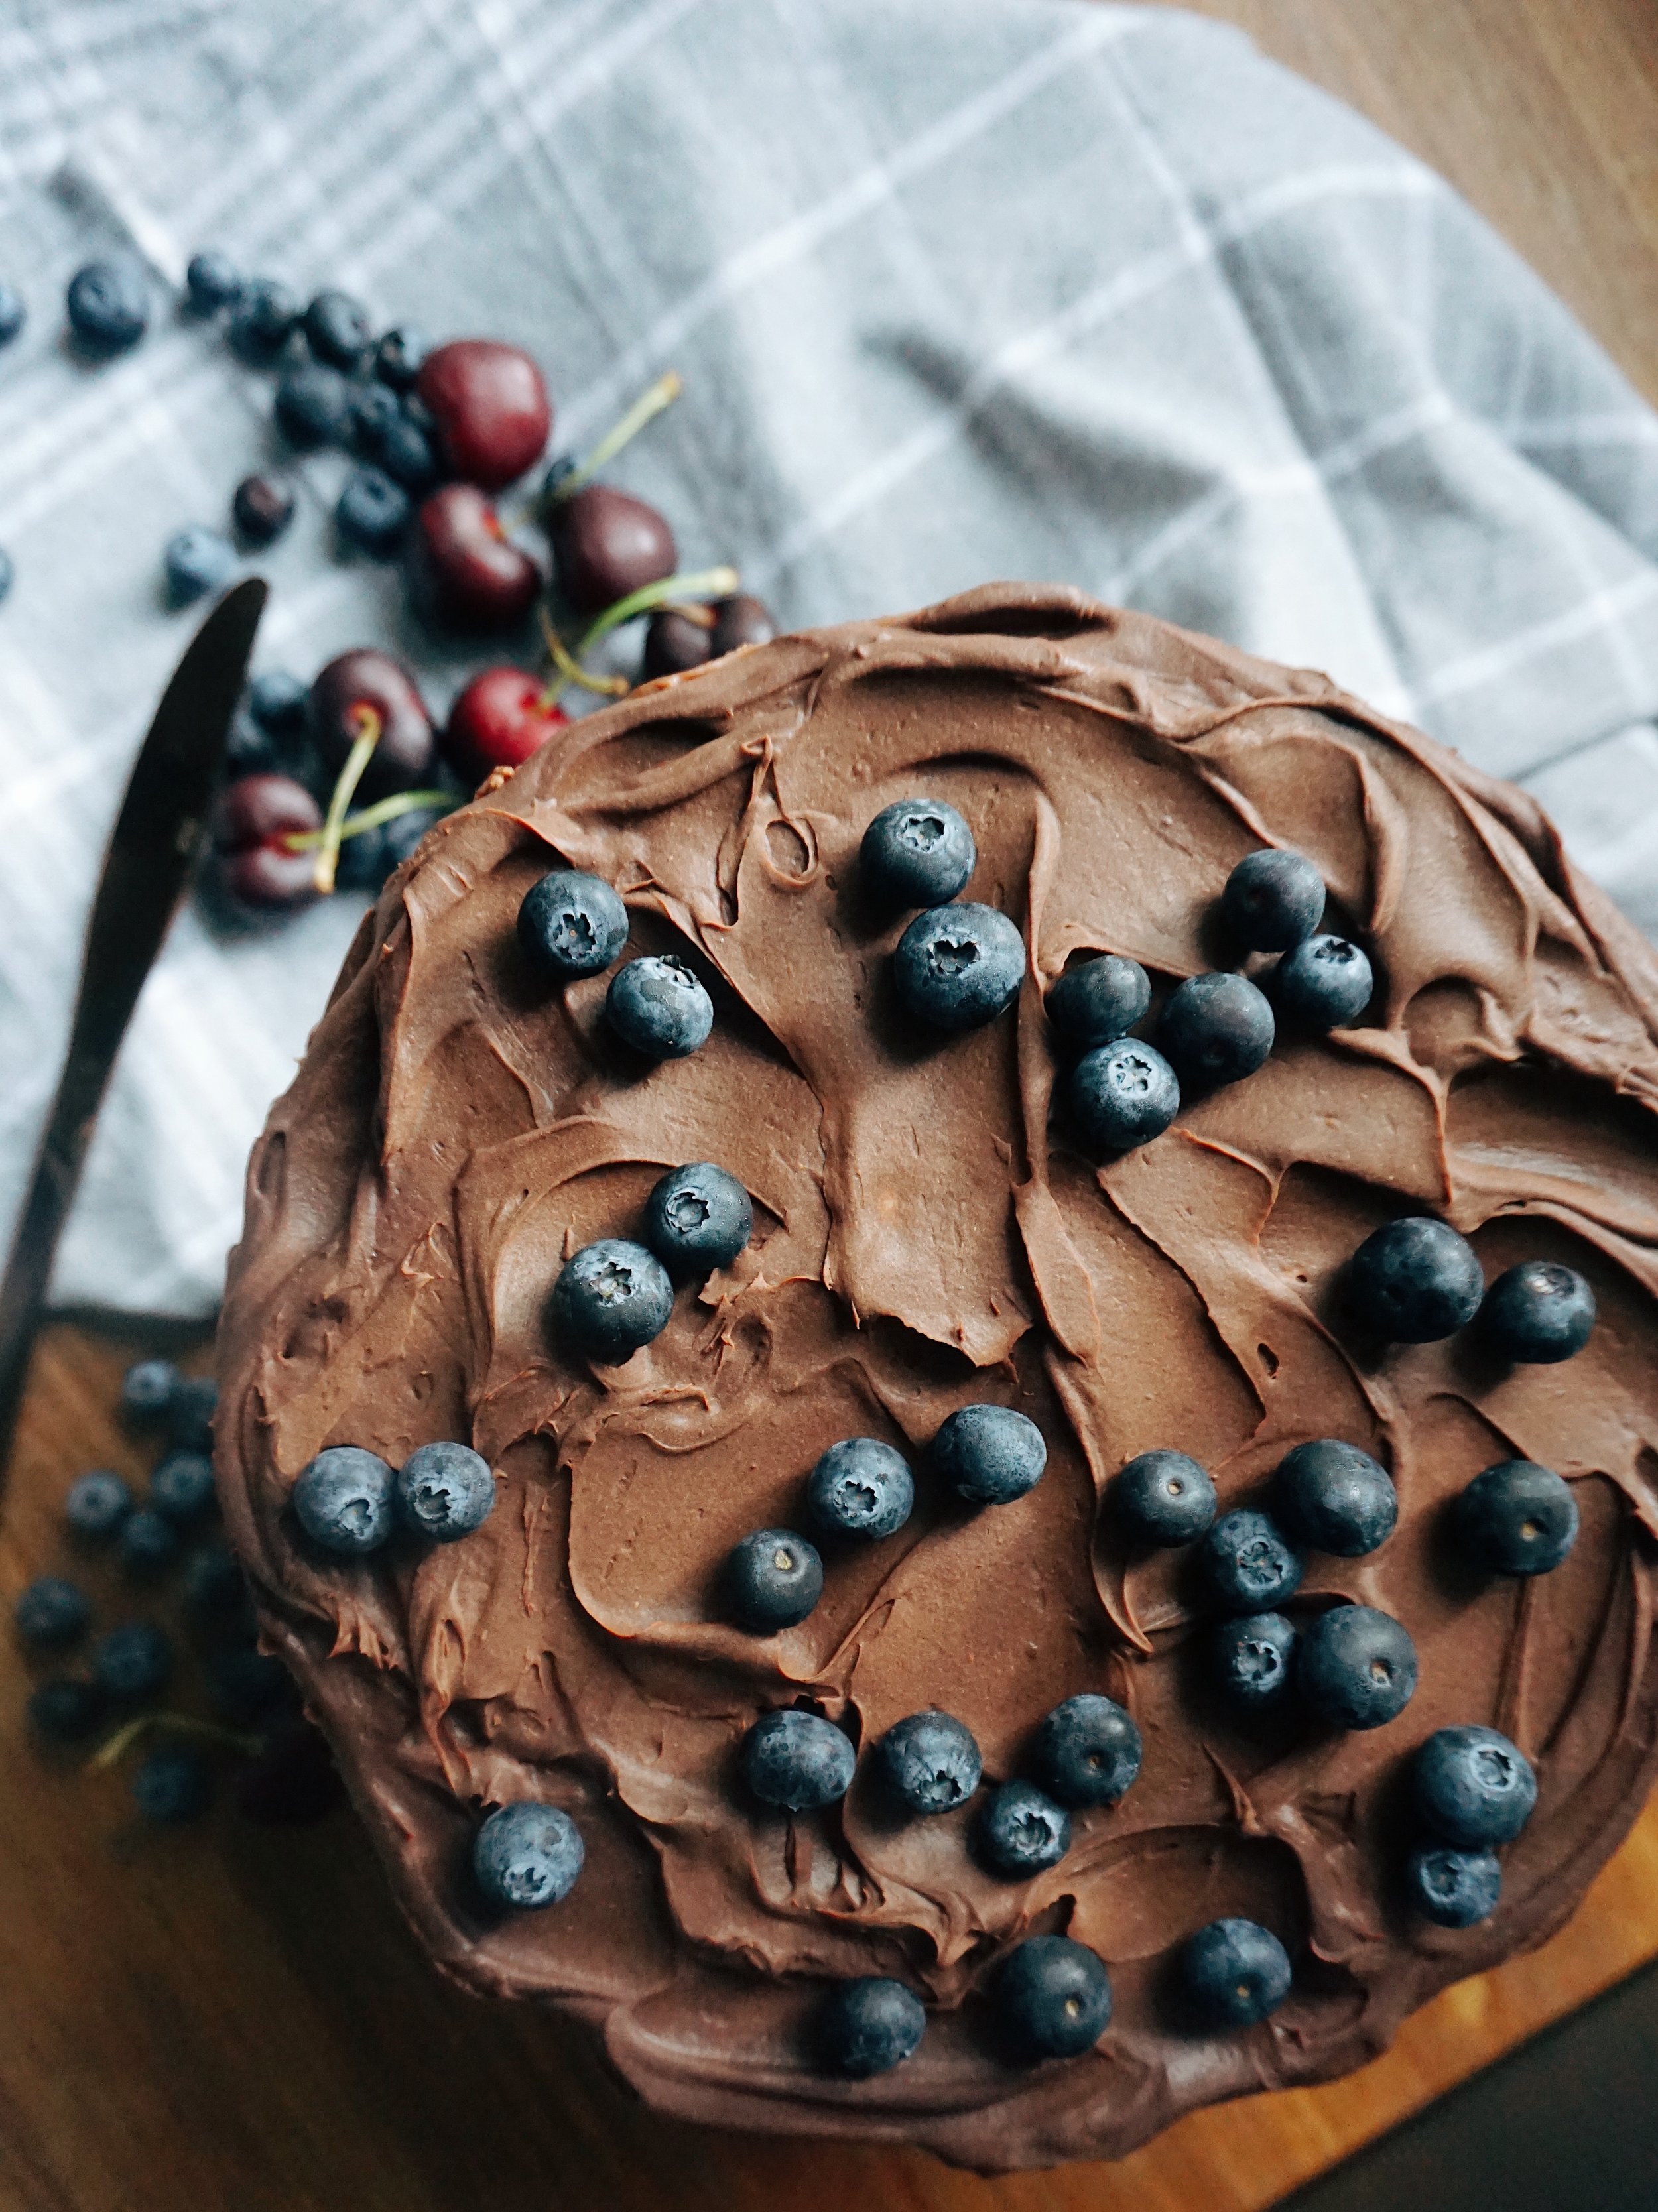 Congrats Tragic Related vaniļas krēma kūka ar šokolādi — našķoties